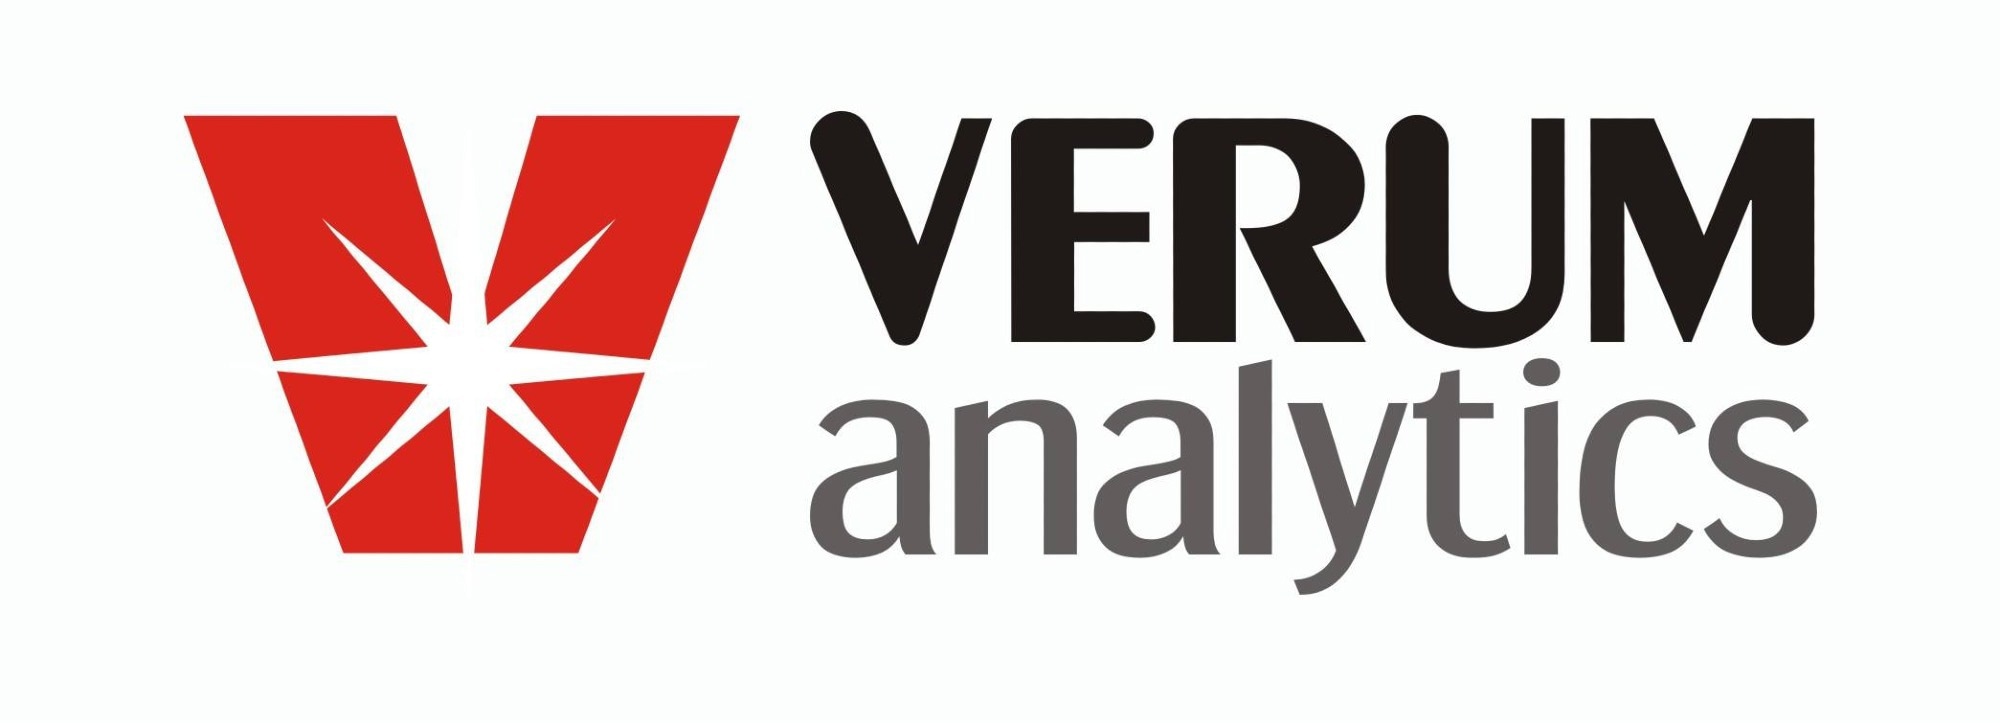 Verum Analytics LLC